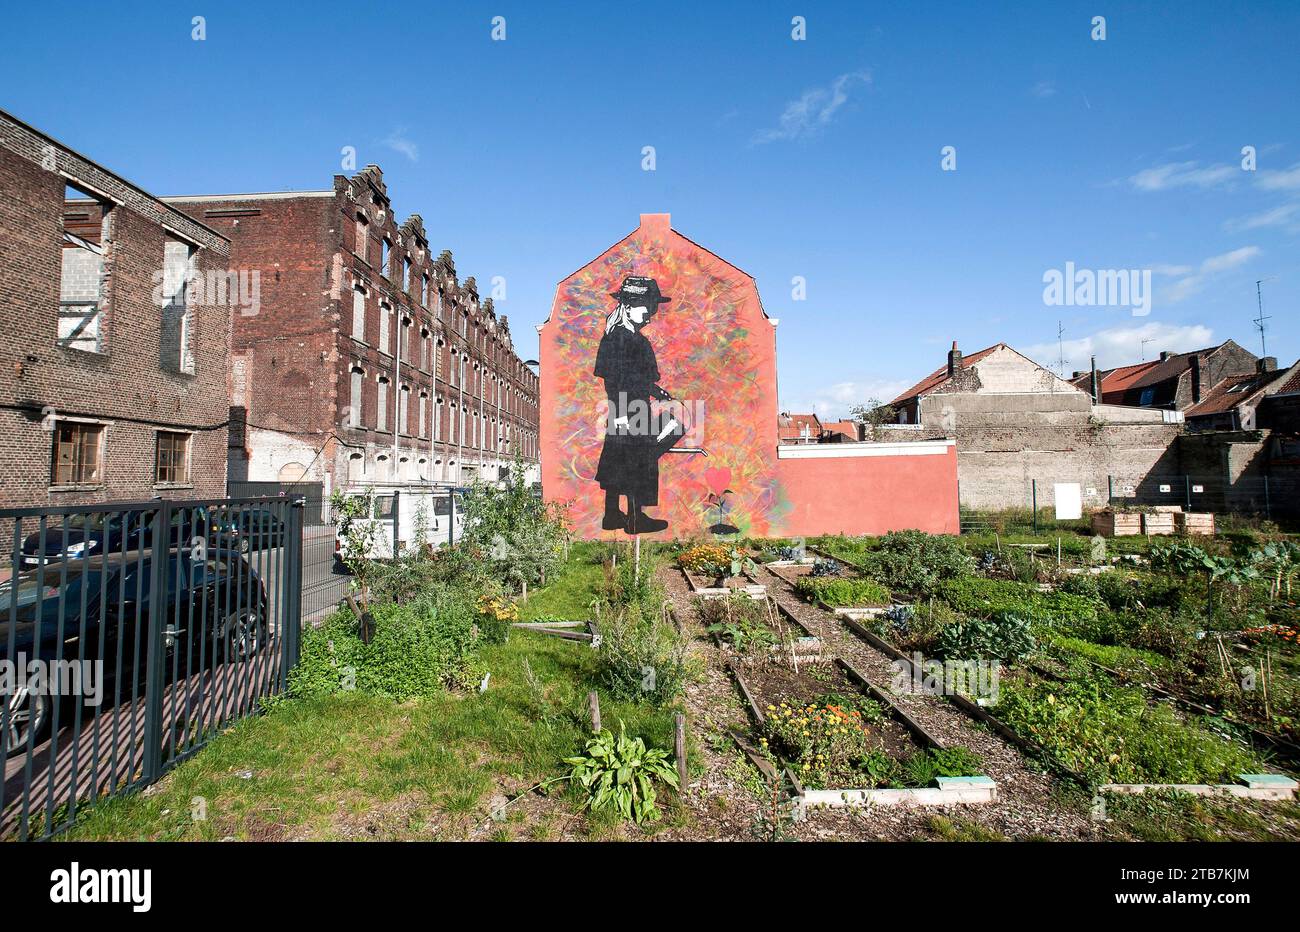 Roubaix (nord de la France) : murale de l'artiste Street art Ted Nomad dans le quartier du pile, petite fille avec arrosoir et jardin communautaire Banque D'Images